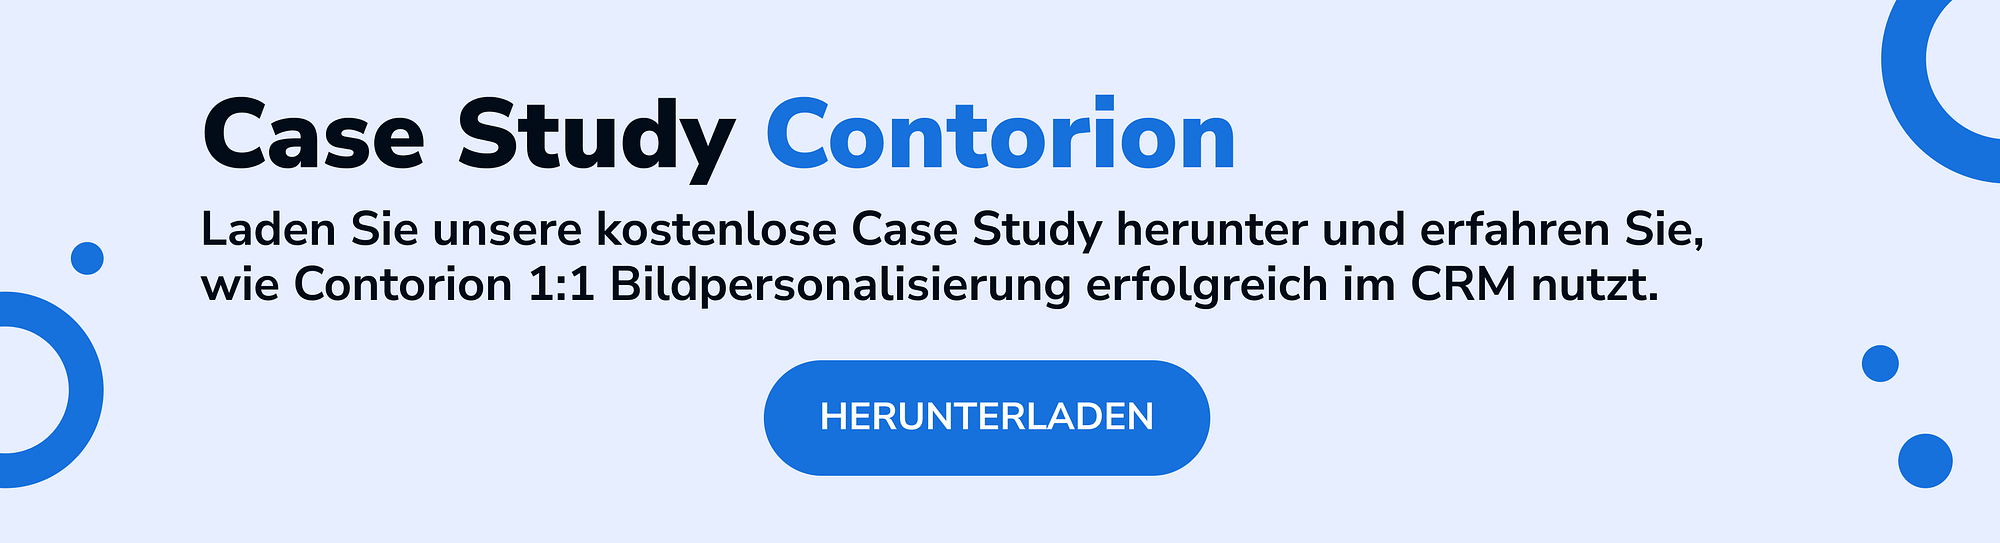 optilyz-blog-banner-case-study-contorion-deutsch